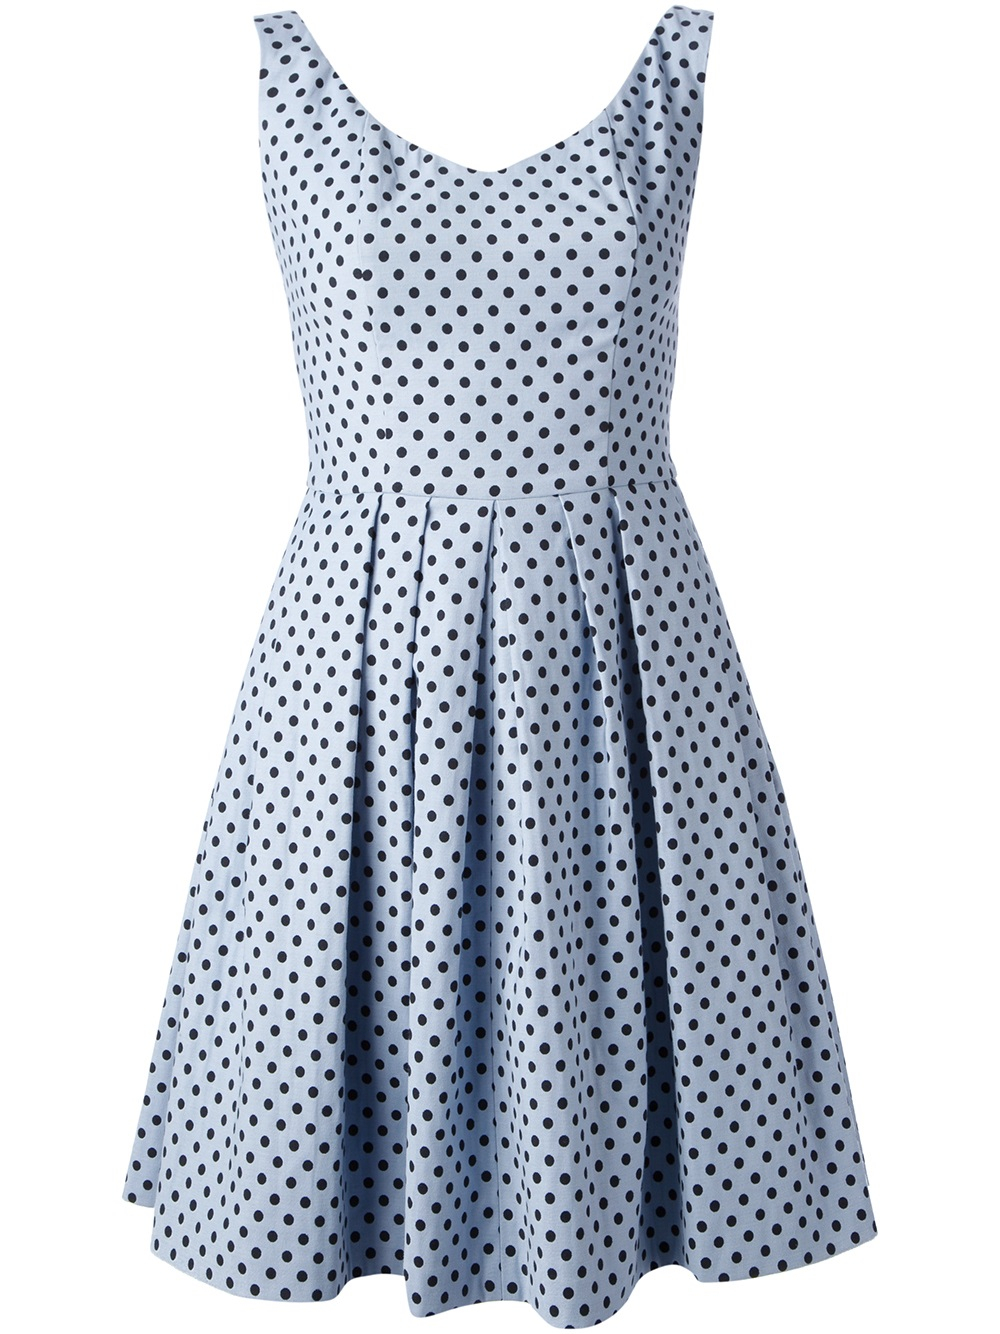 Blue dot dress